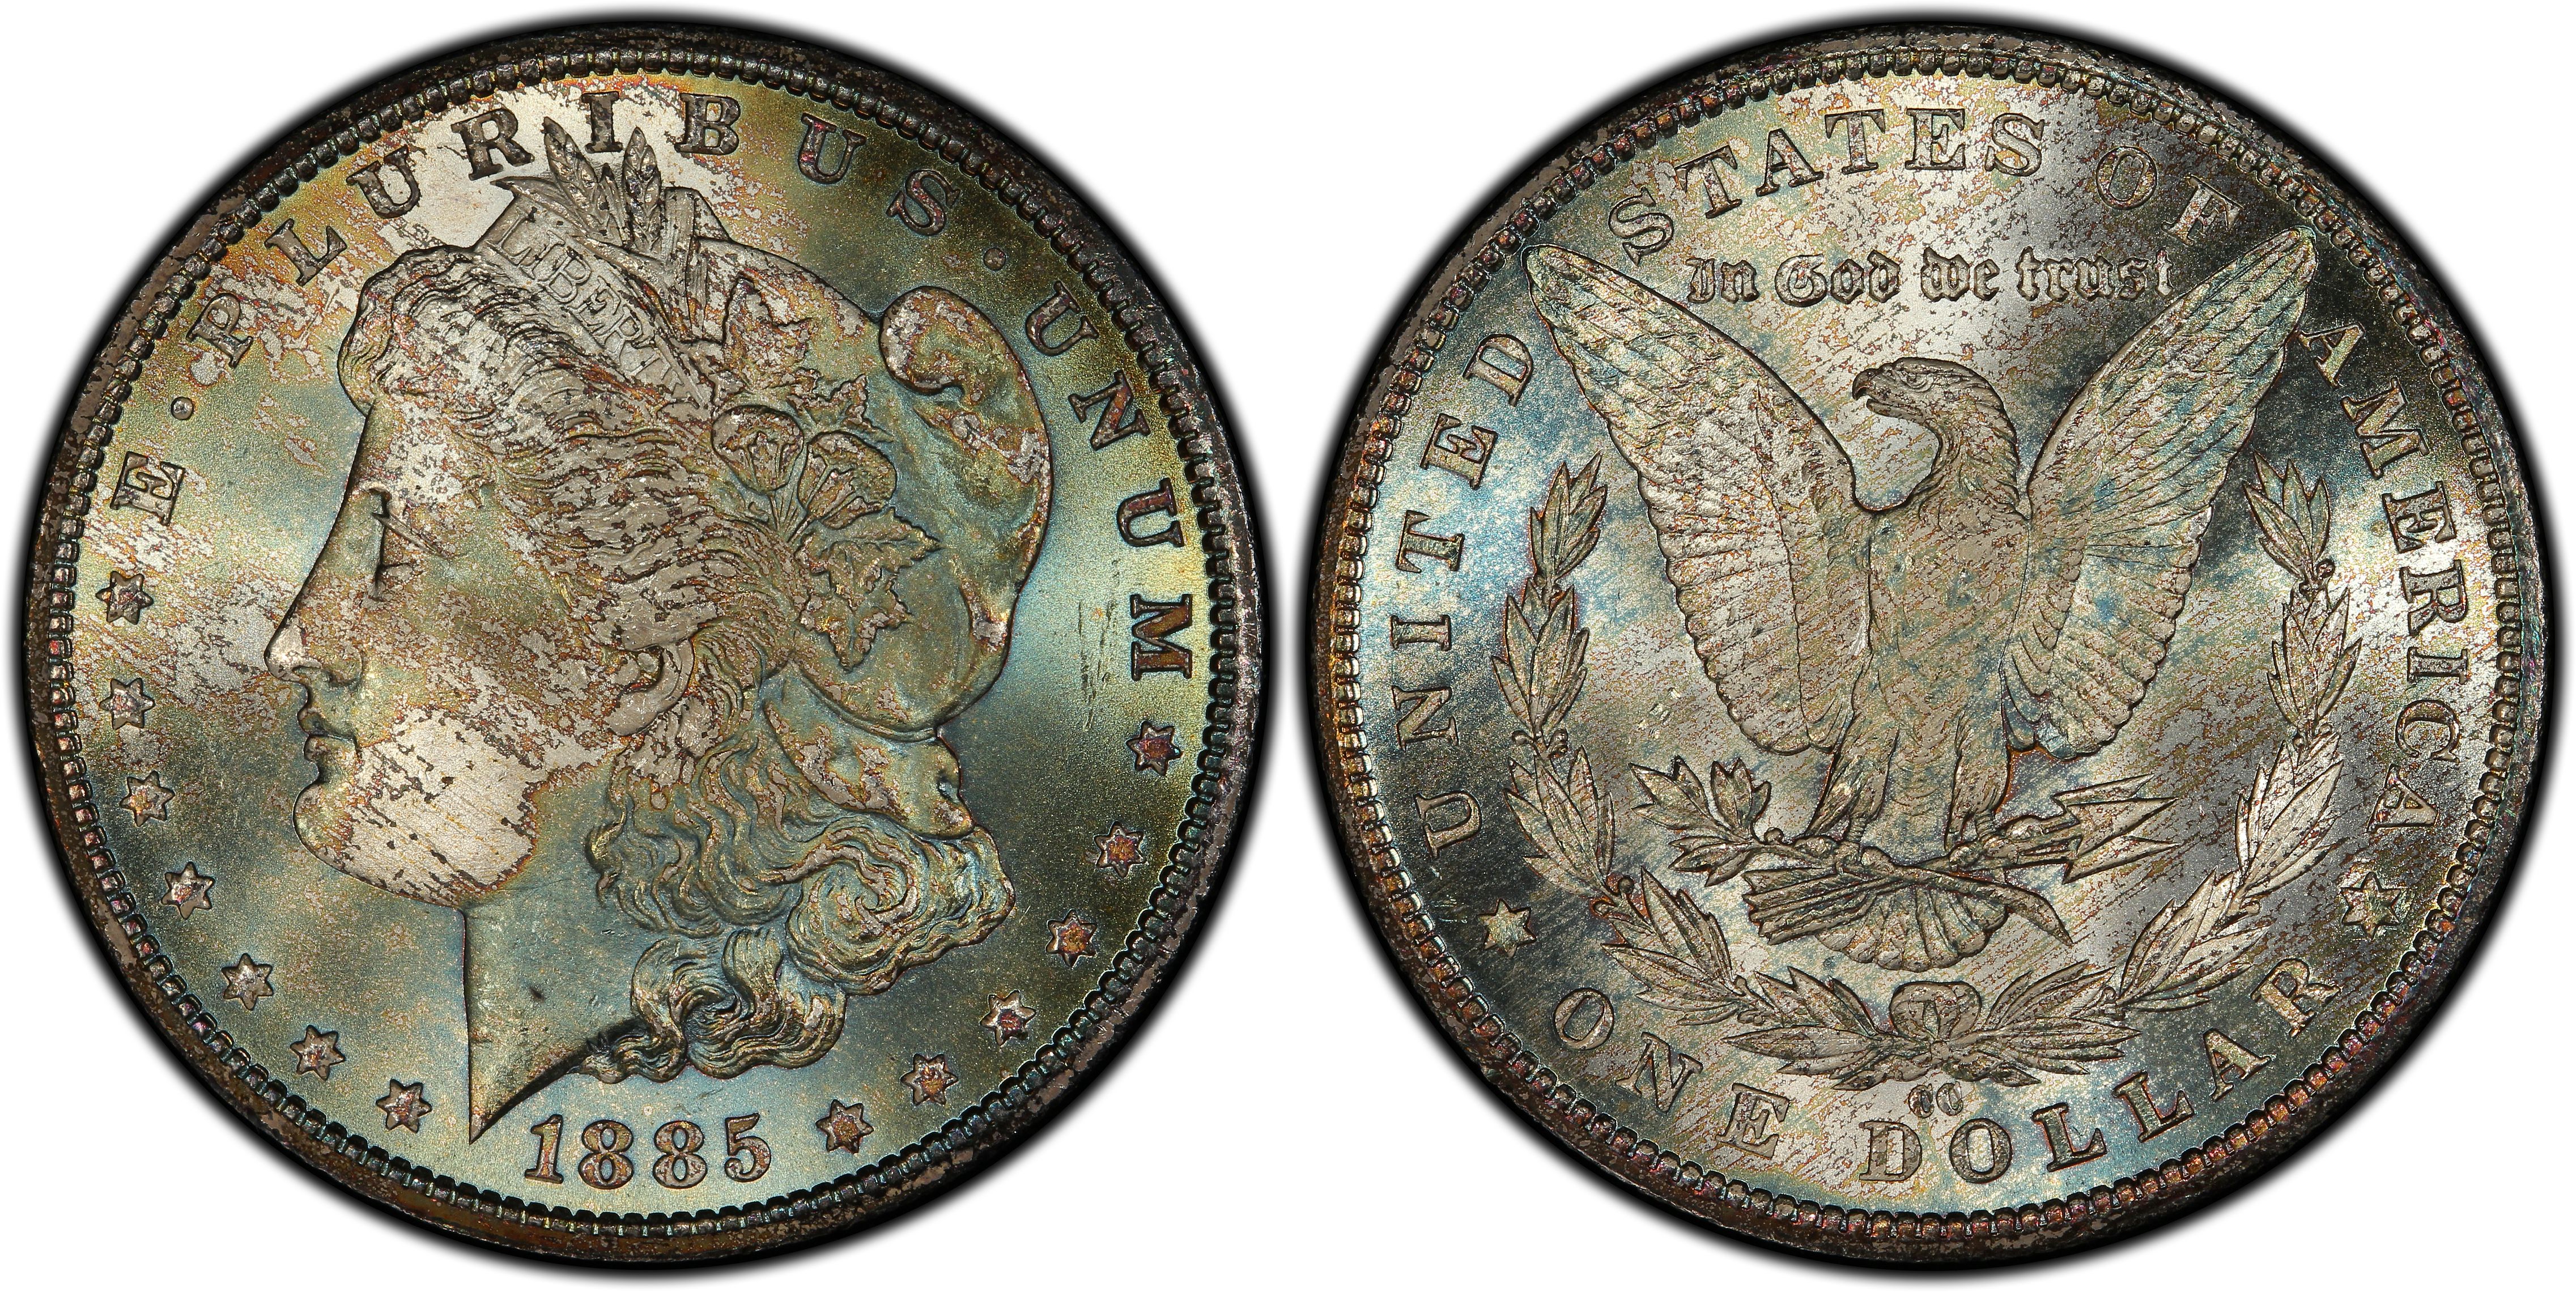 One Carson City Morgan Dollar COPY Coin 1885 1